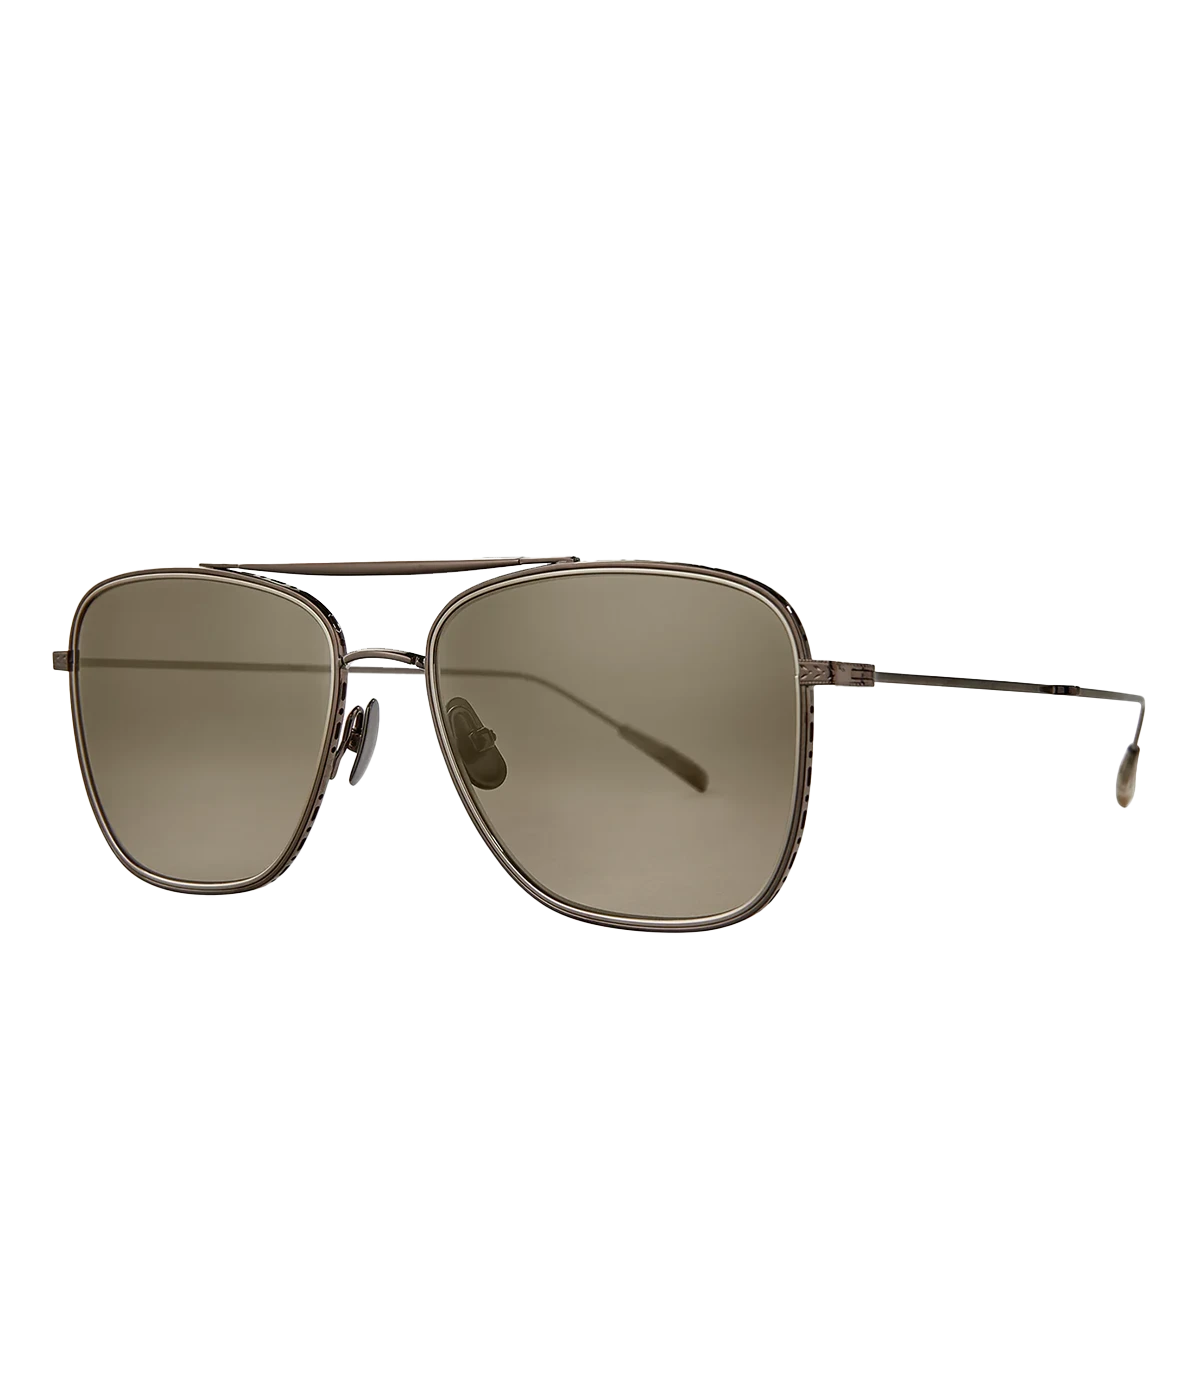 Novarro Sun 55 Sunglasses in Bronze & Smokey